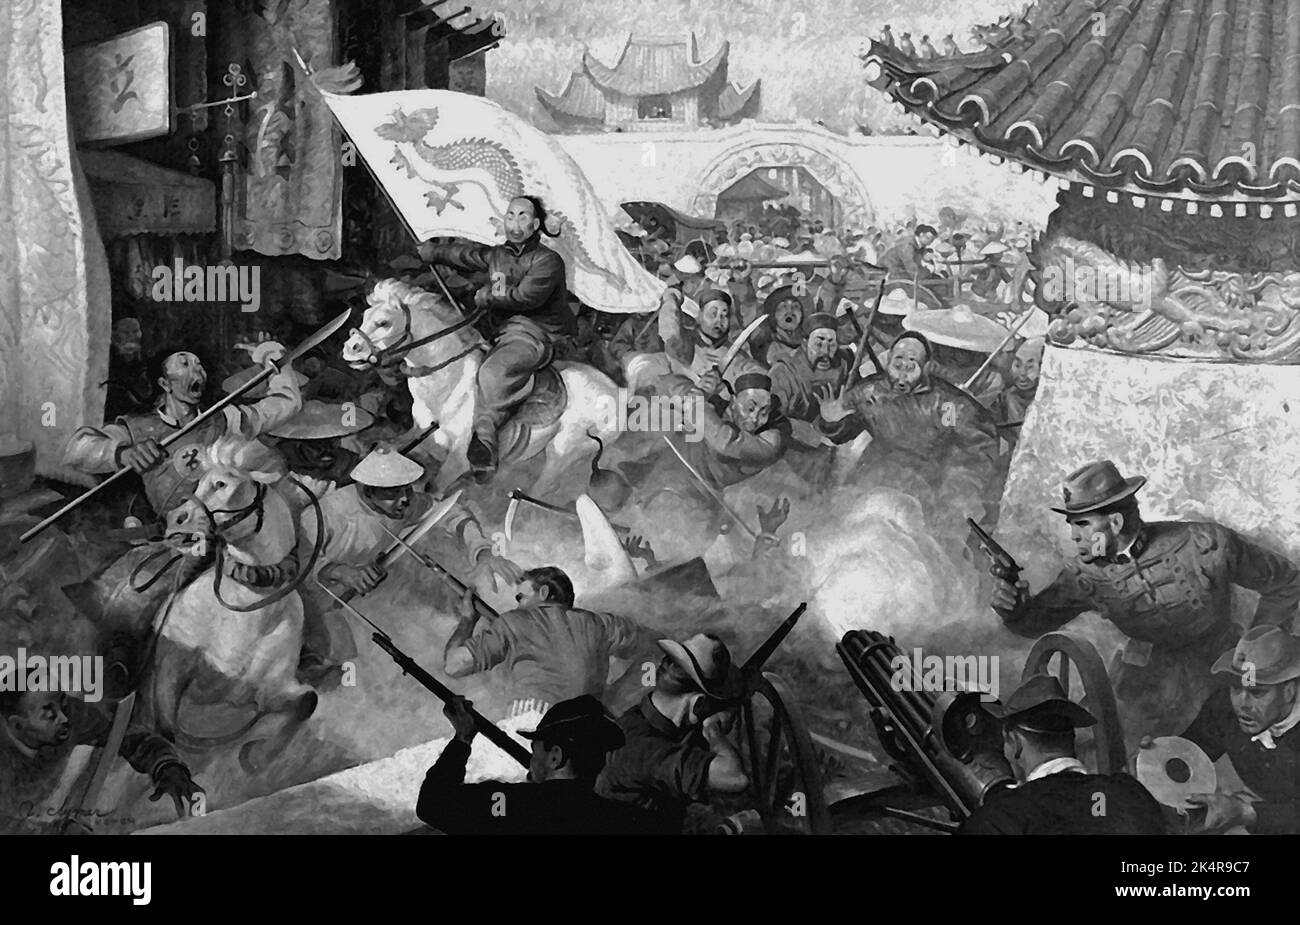 PEKING, CHINA - 1900 - Kunstwerk, das die US-Marineinfanteristen zeigt, die vor der Peking-Legation gegen die rebellischen Boxer kämpfen, 1900. Gemälde von John Clymer - Stockfoto